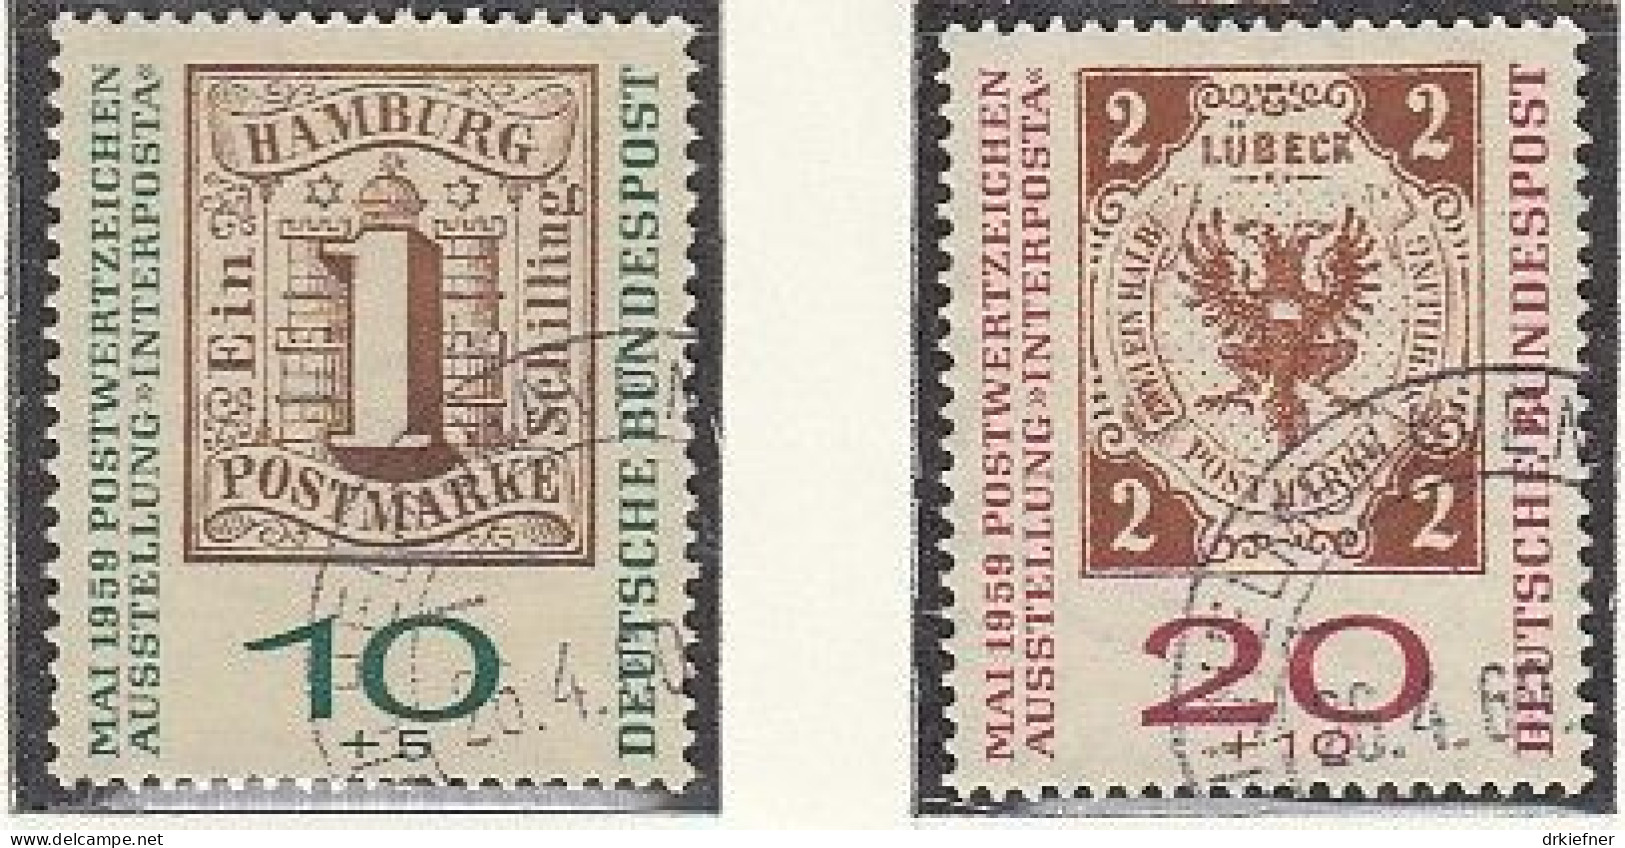 BRD  310-311 A, Gestempelt, INTERPOSTA, 1959 - Usados